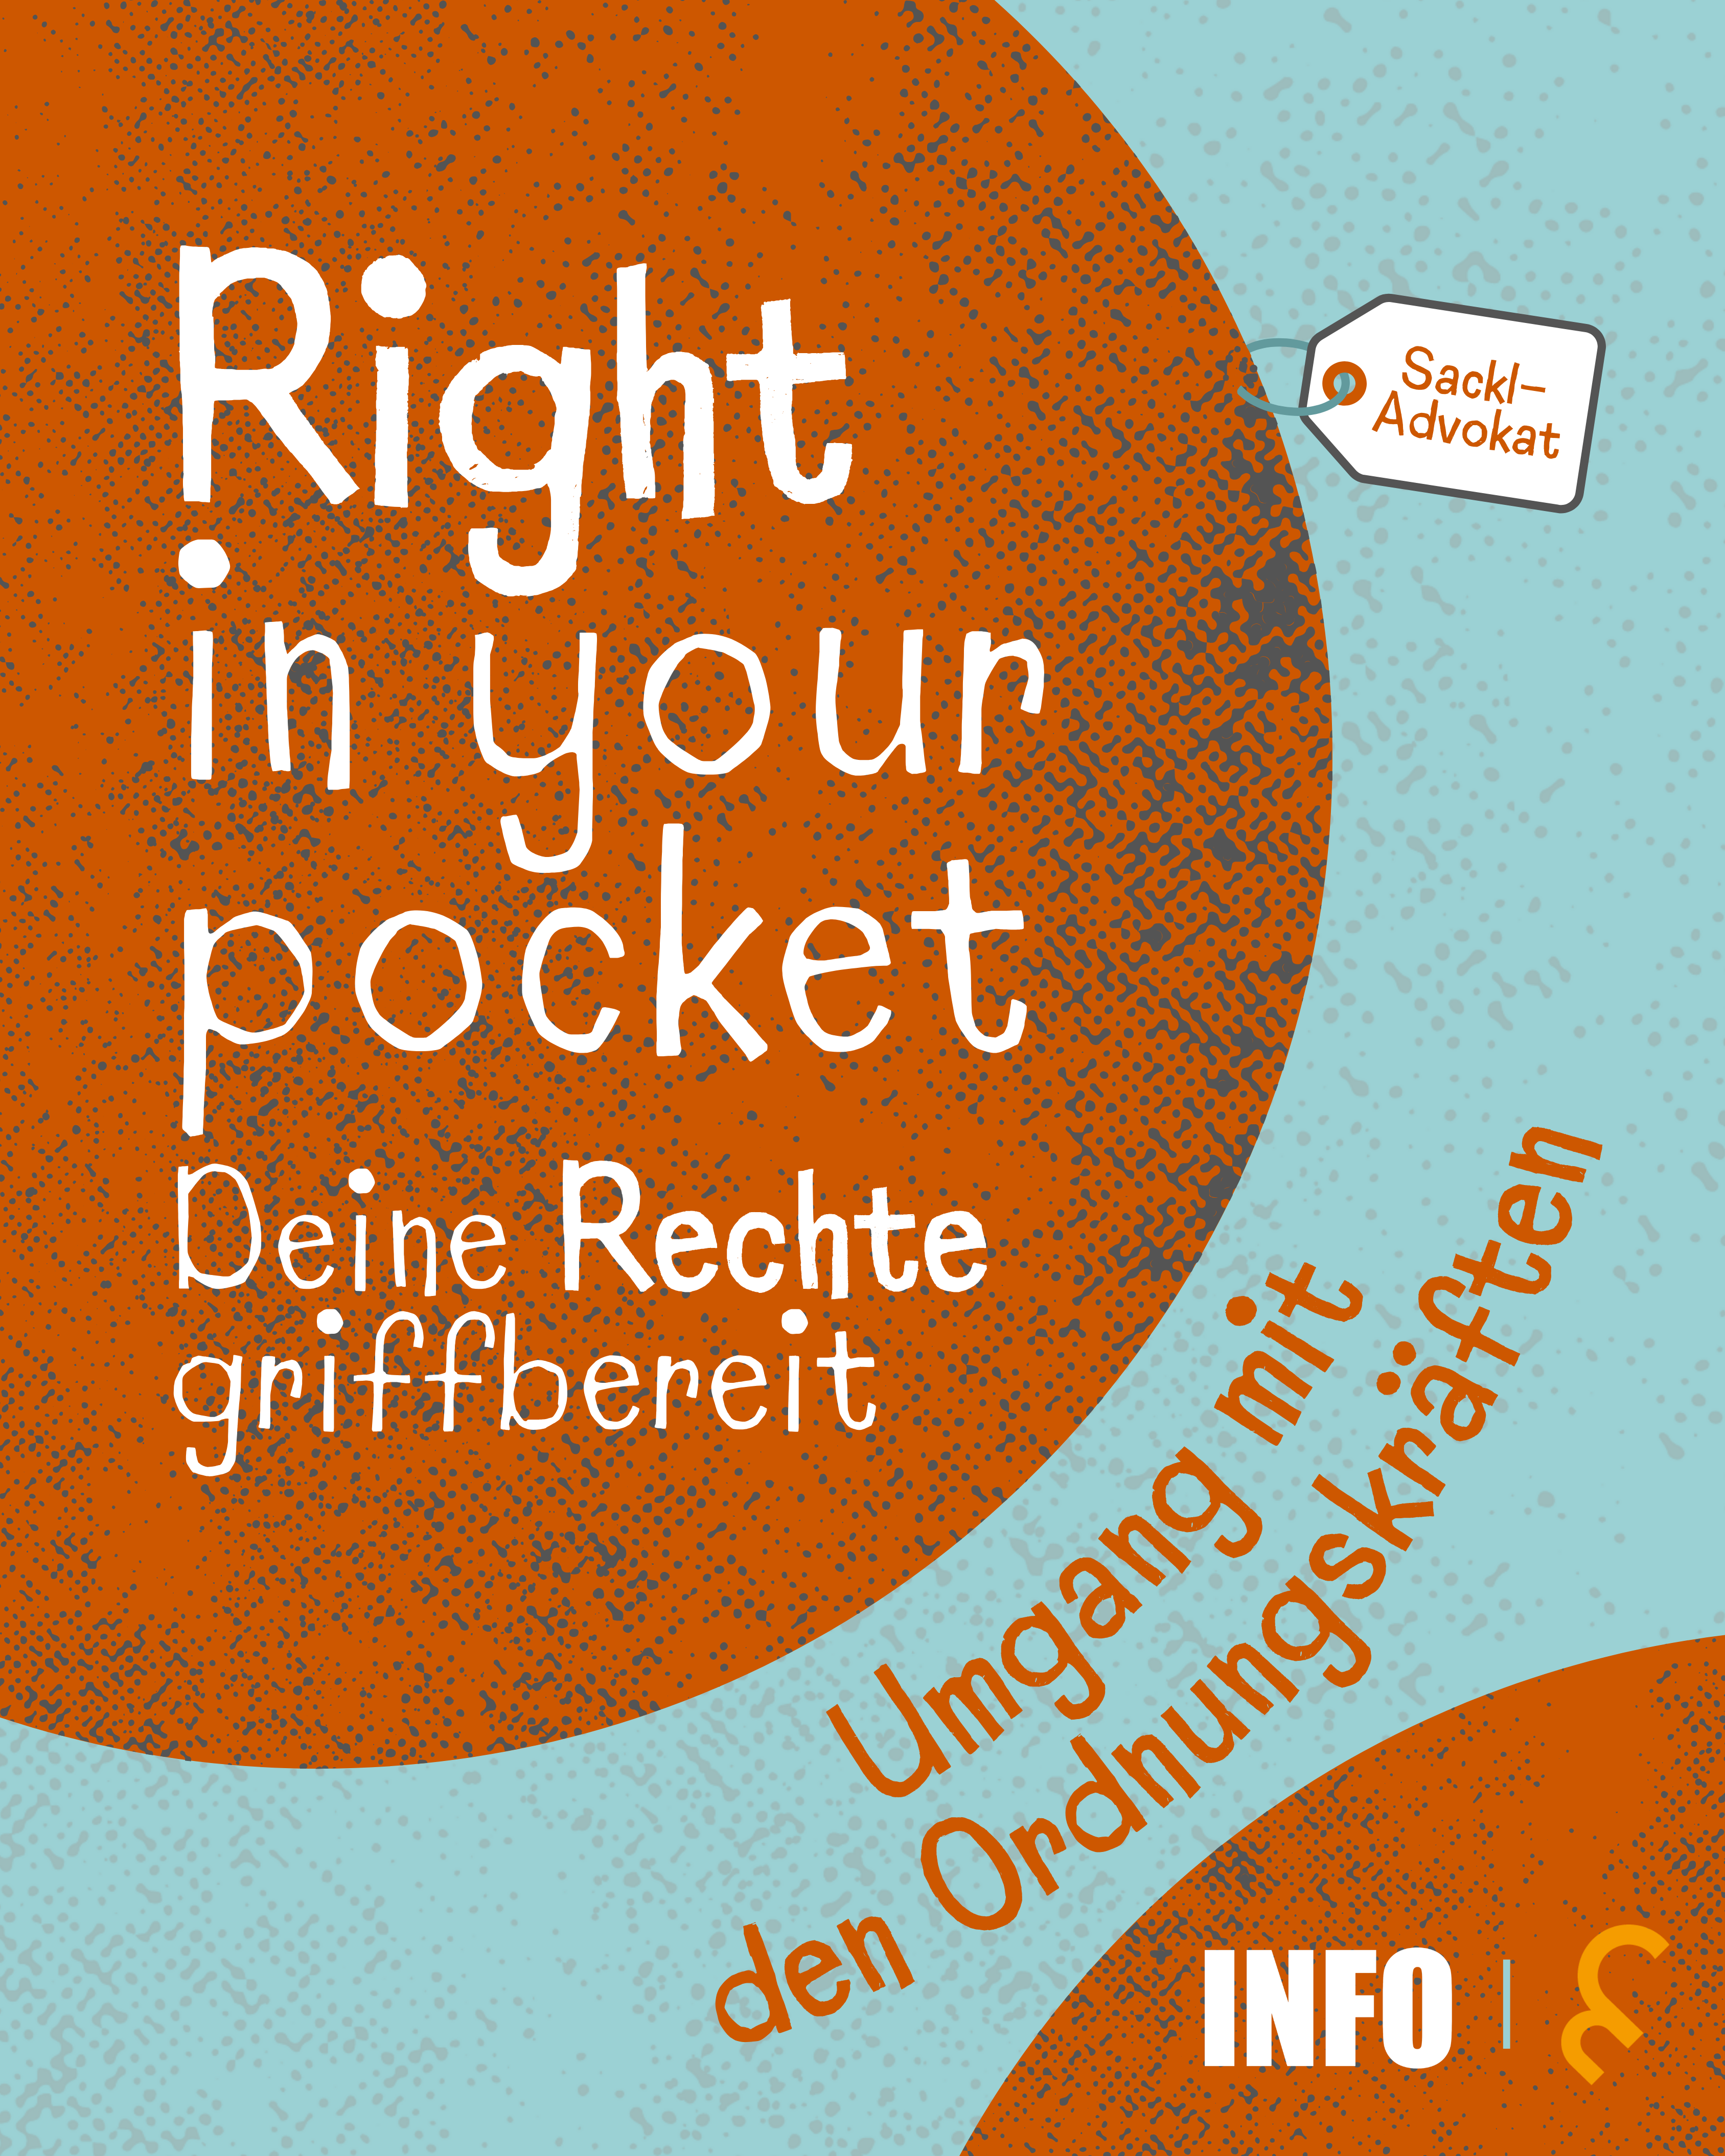 Right in your pocket - Deine Rechte griffbereit 